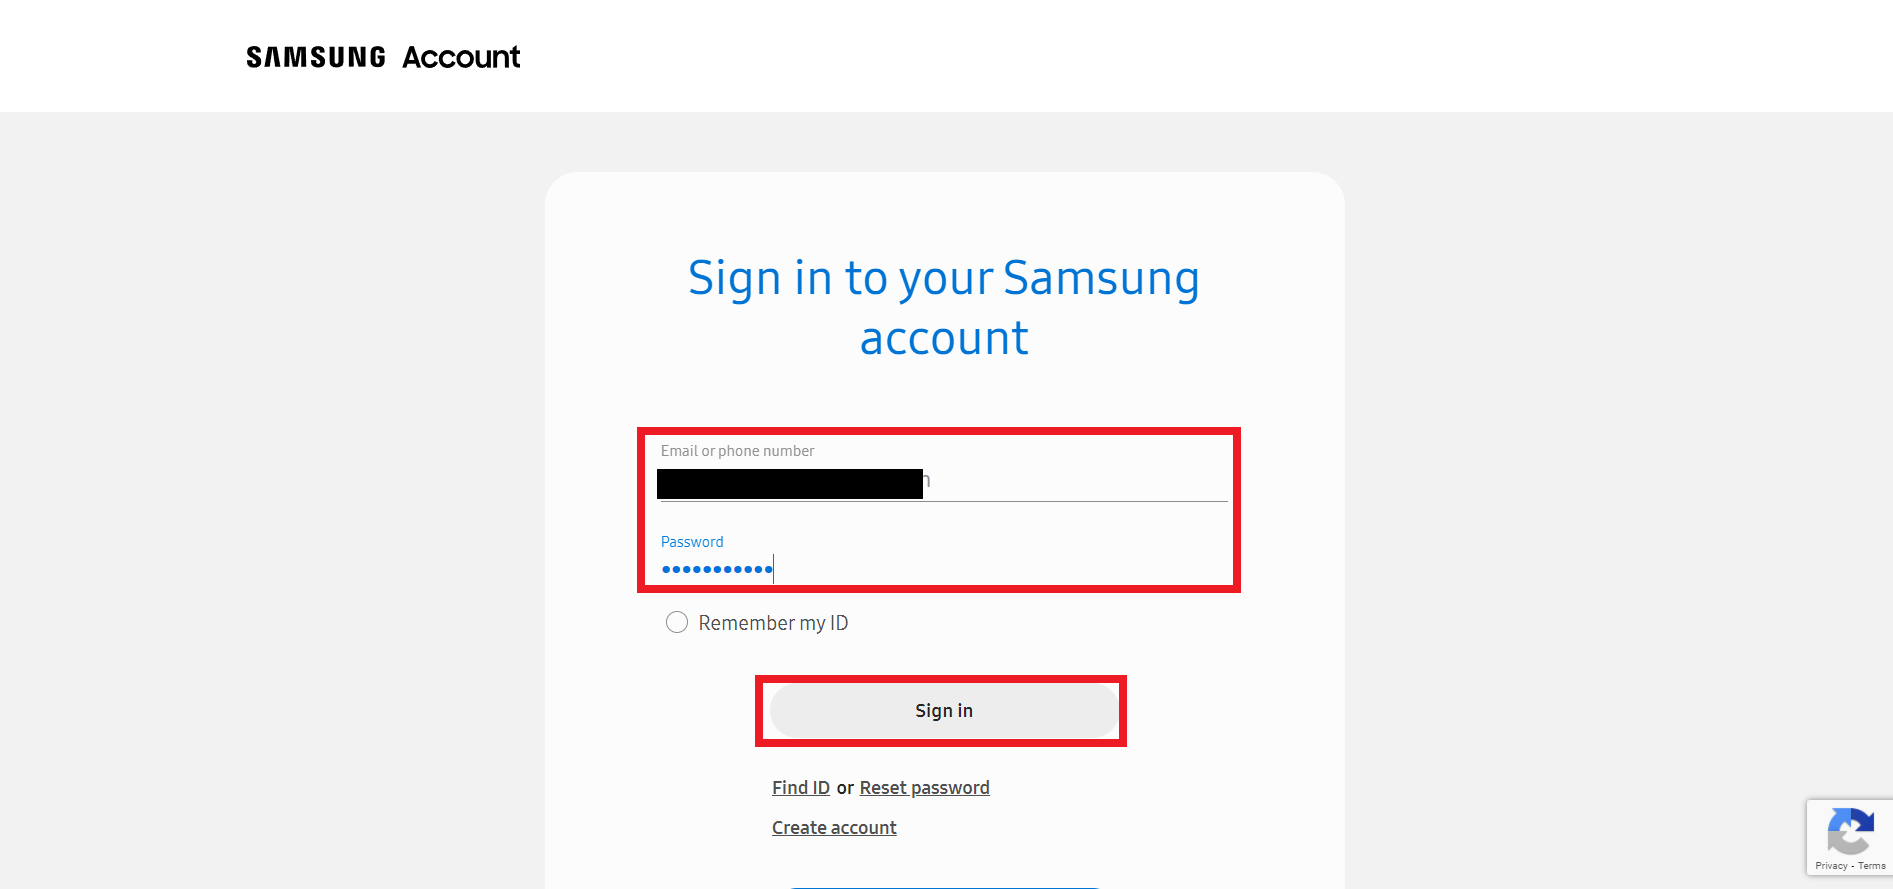 Jelentkezzen be Samsung-fiókjába e-mail-címével vagy telefonszámával és jelszavával